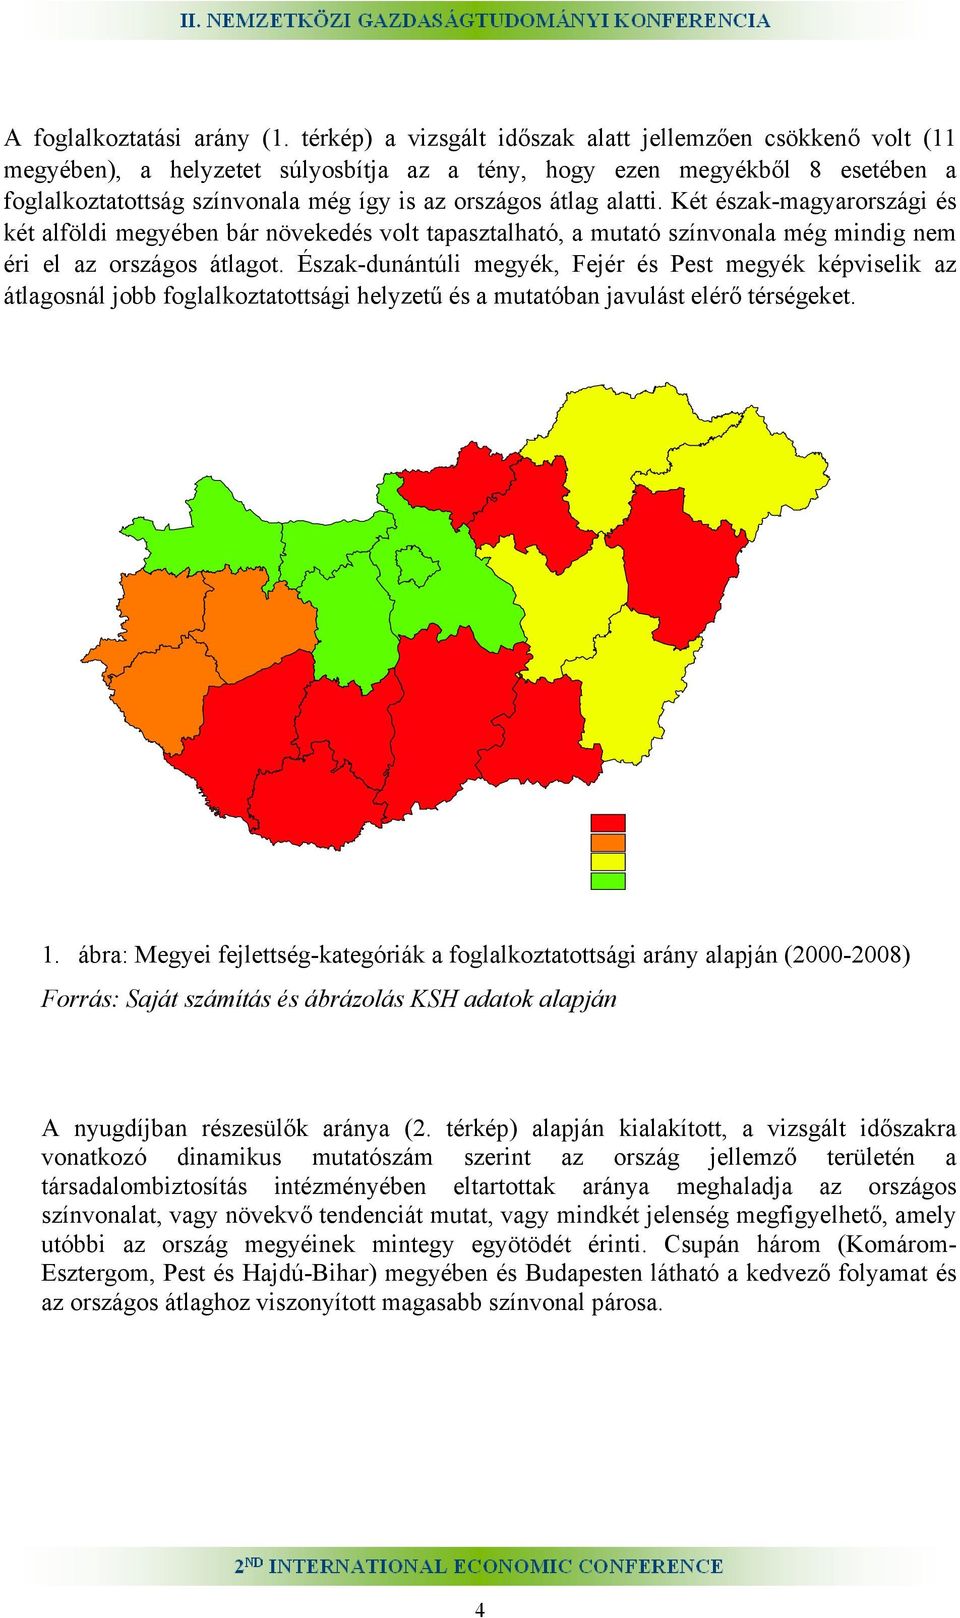 alatti. Két észak-magyarországi és két alföldi megyében bár növekedés volt tapasztalható, a mutató színvonala még mindig nem éri el az országos átlagot.